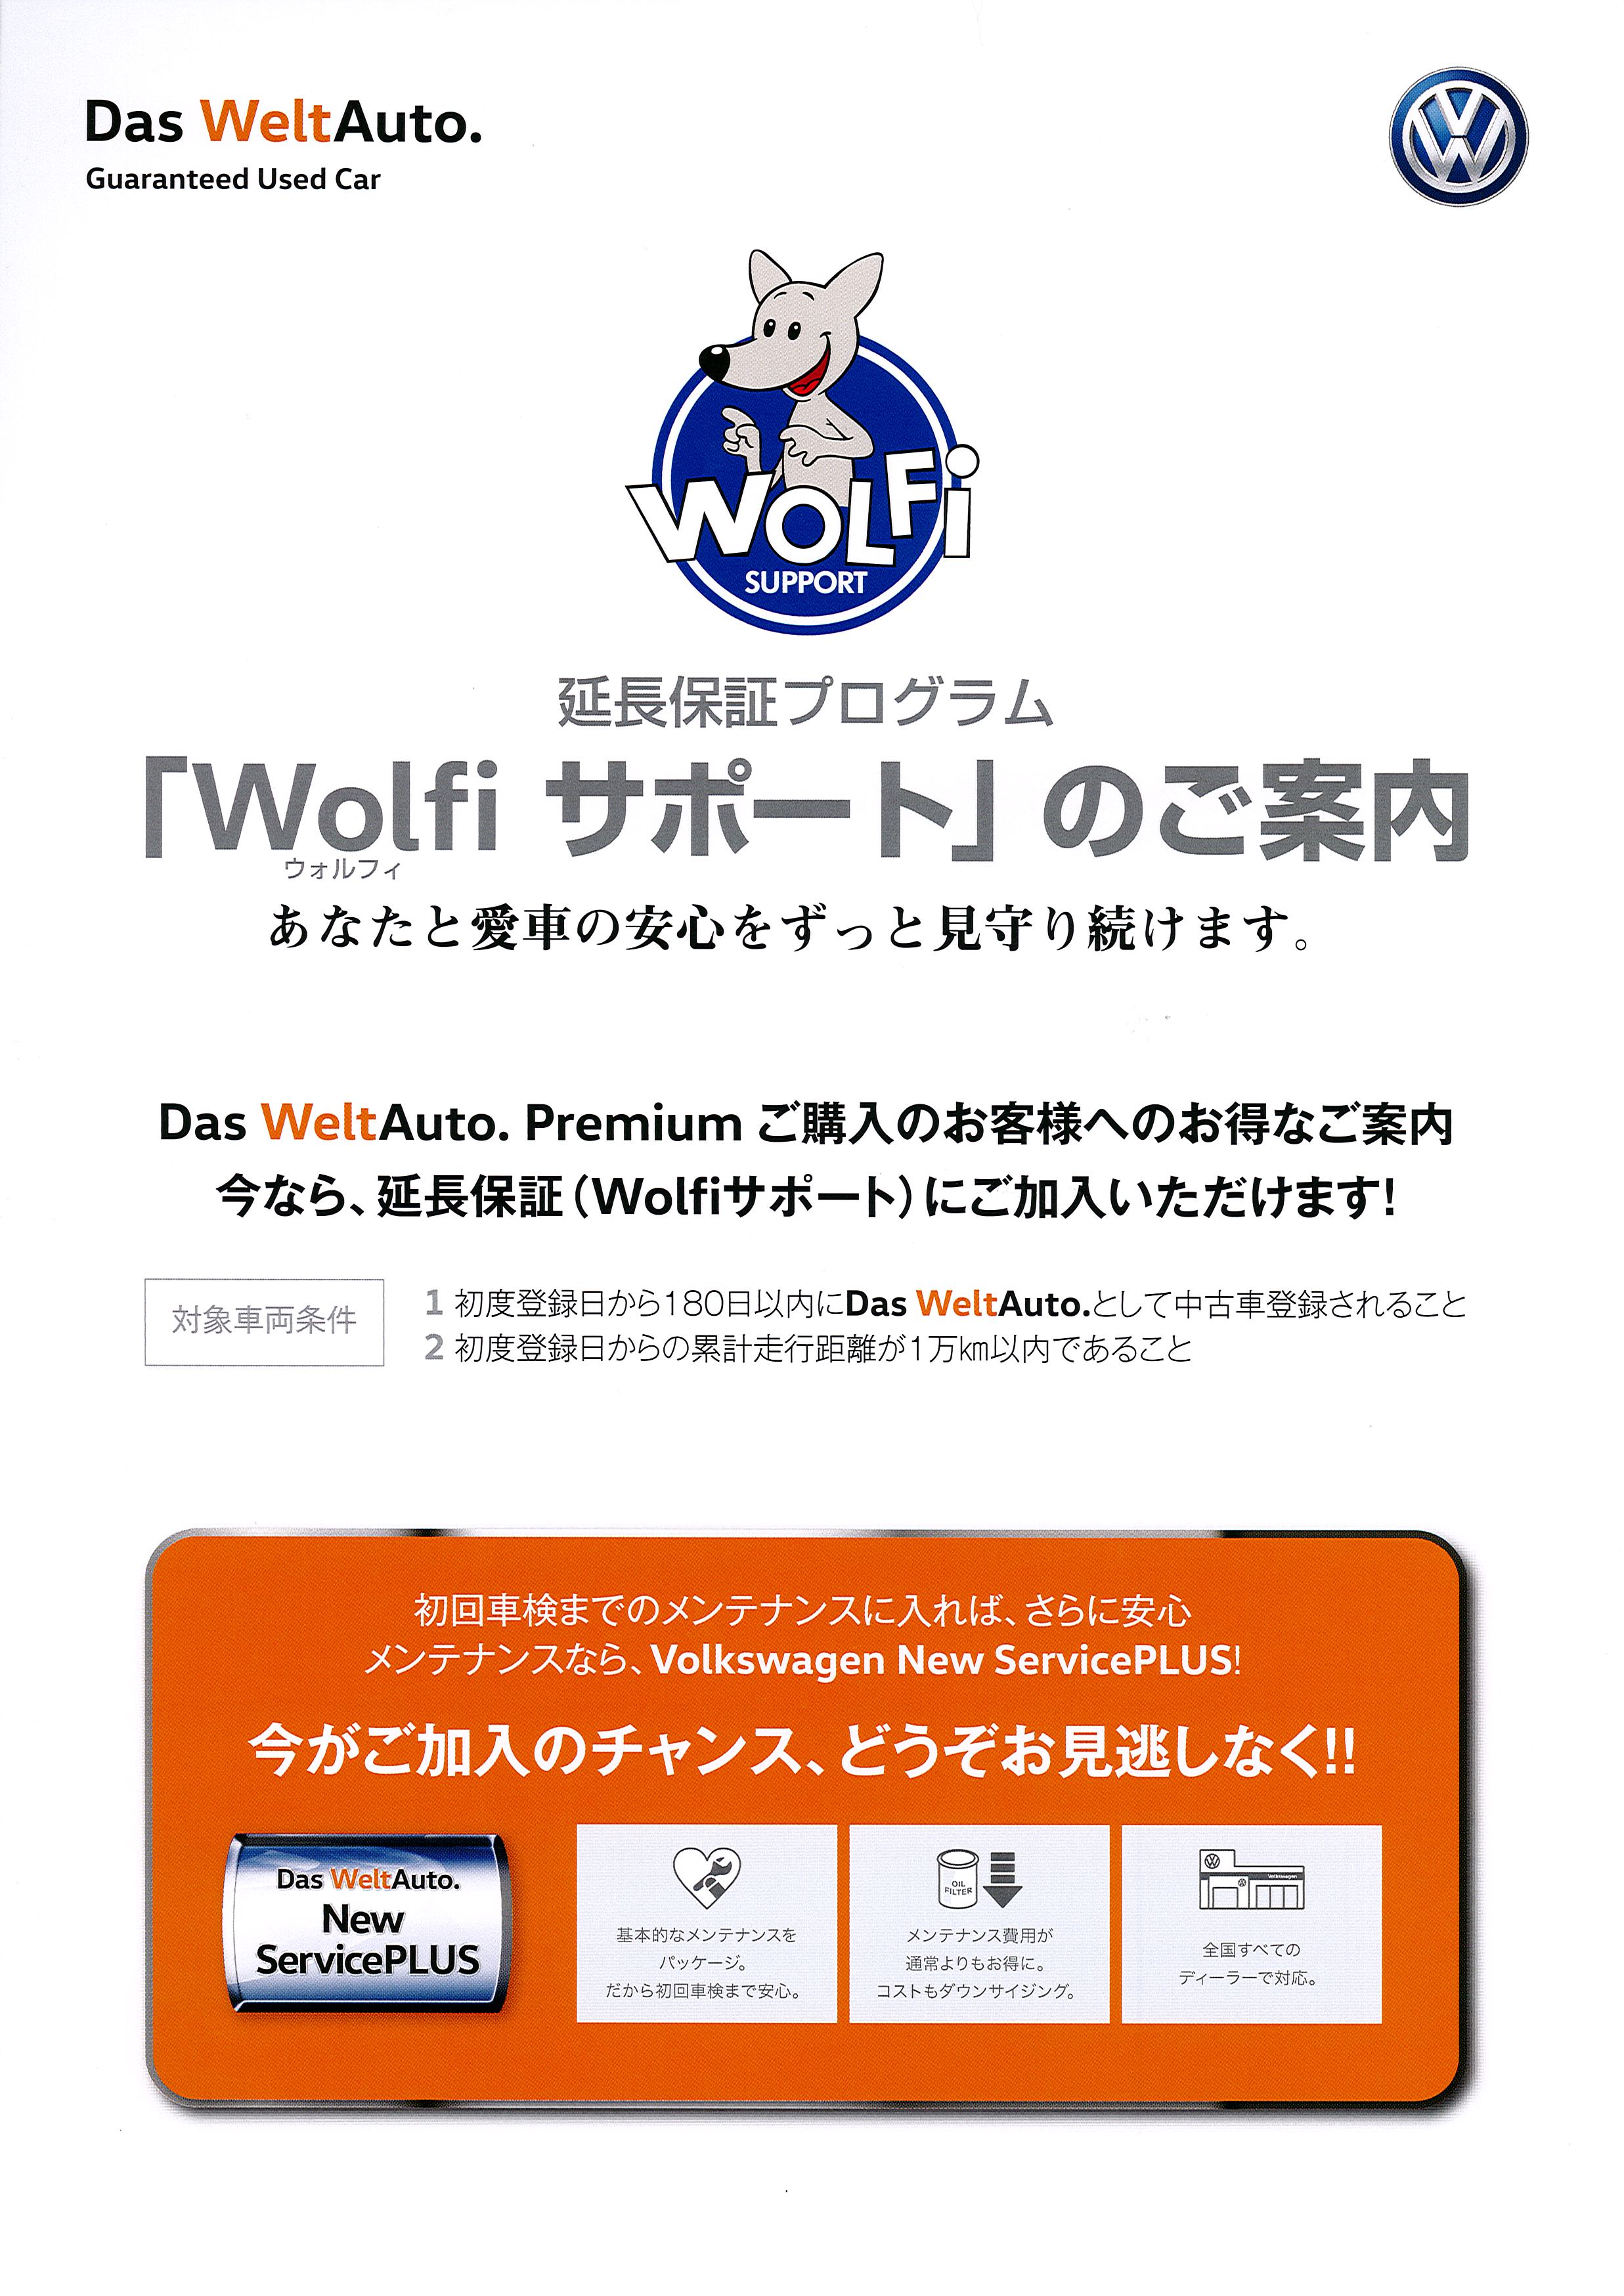 スタッフブログ 延長保証 について Volkswagen千葉南 Volkswagen Chiba Minami